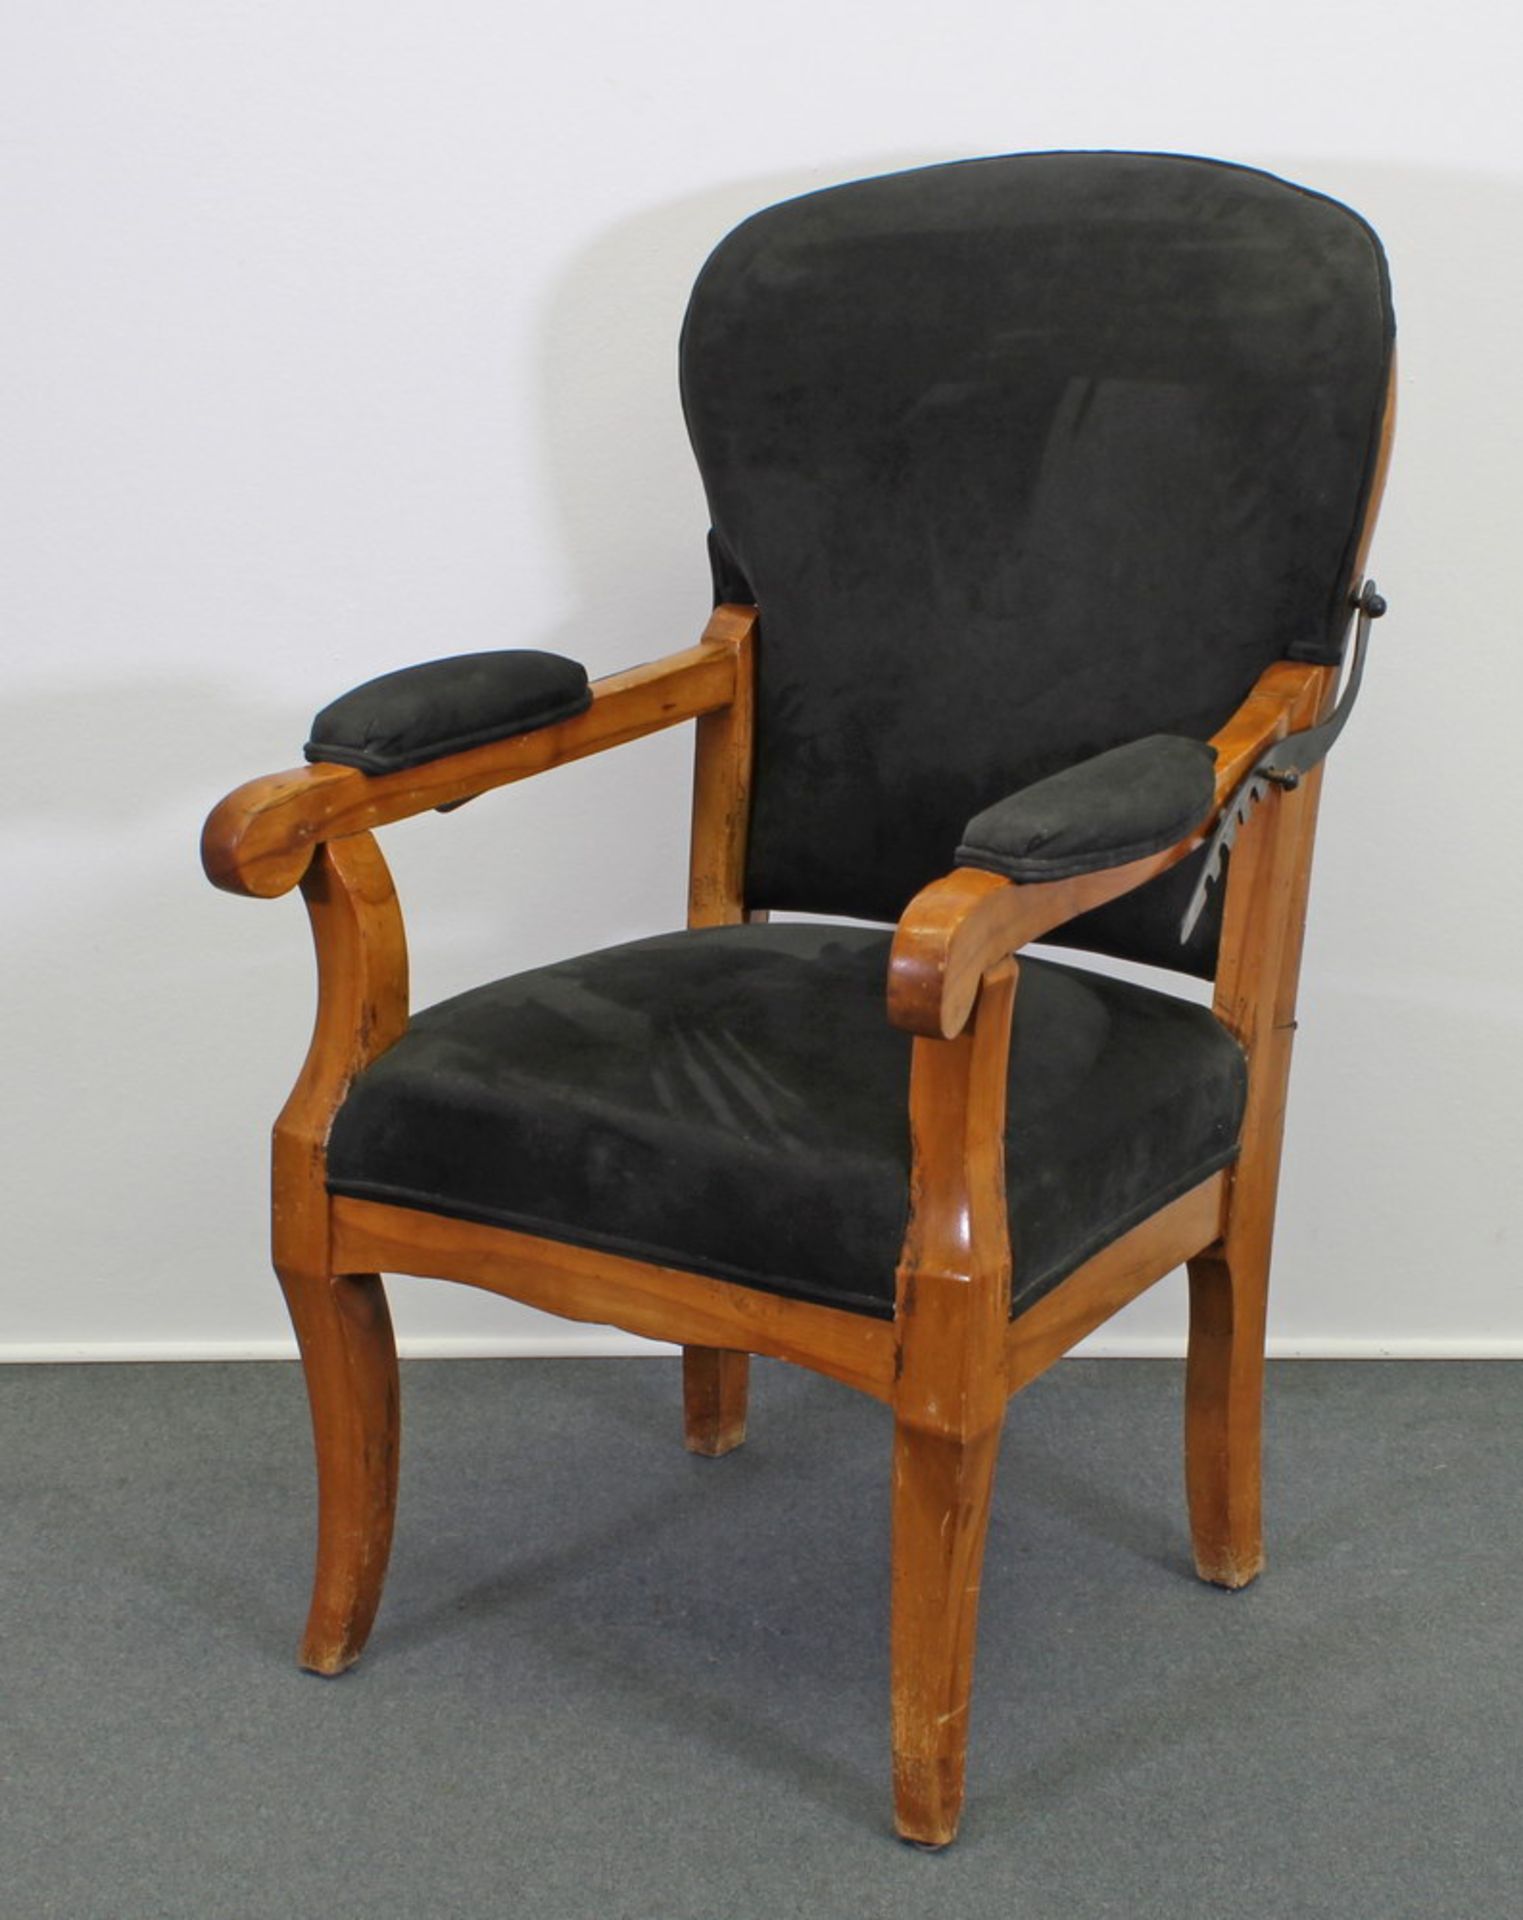 Armlehnstuhl, Biedermeier, um 1830 Kirschbaum, Sitz-, Rücken- und Armlehnpolster mit erneuerten